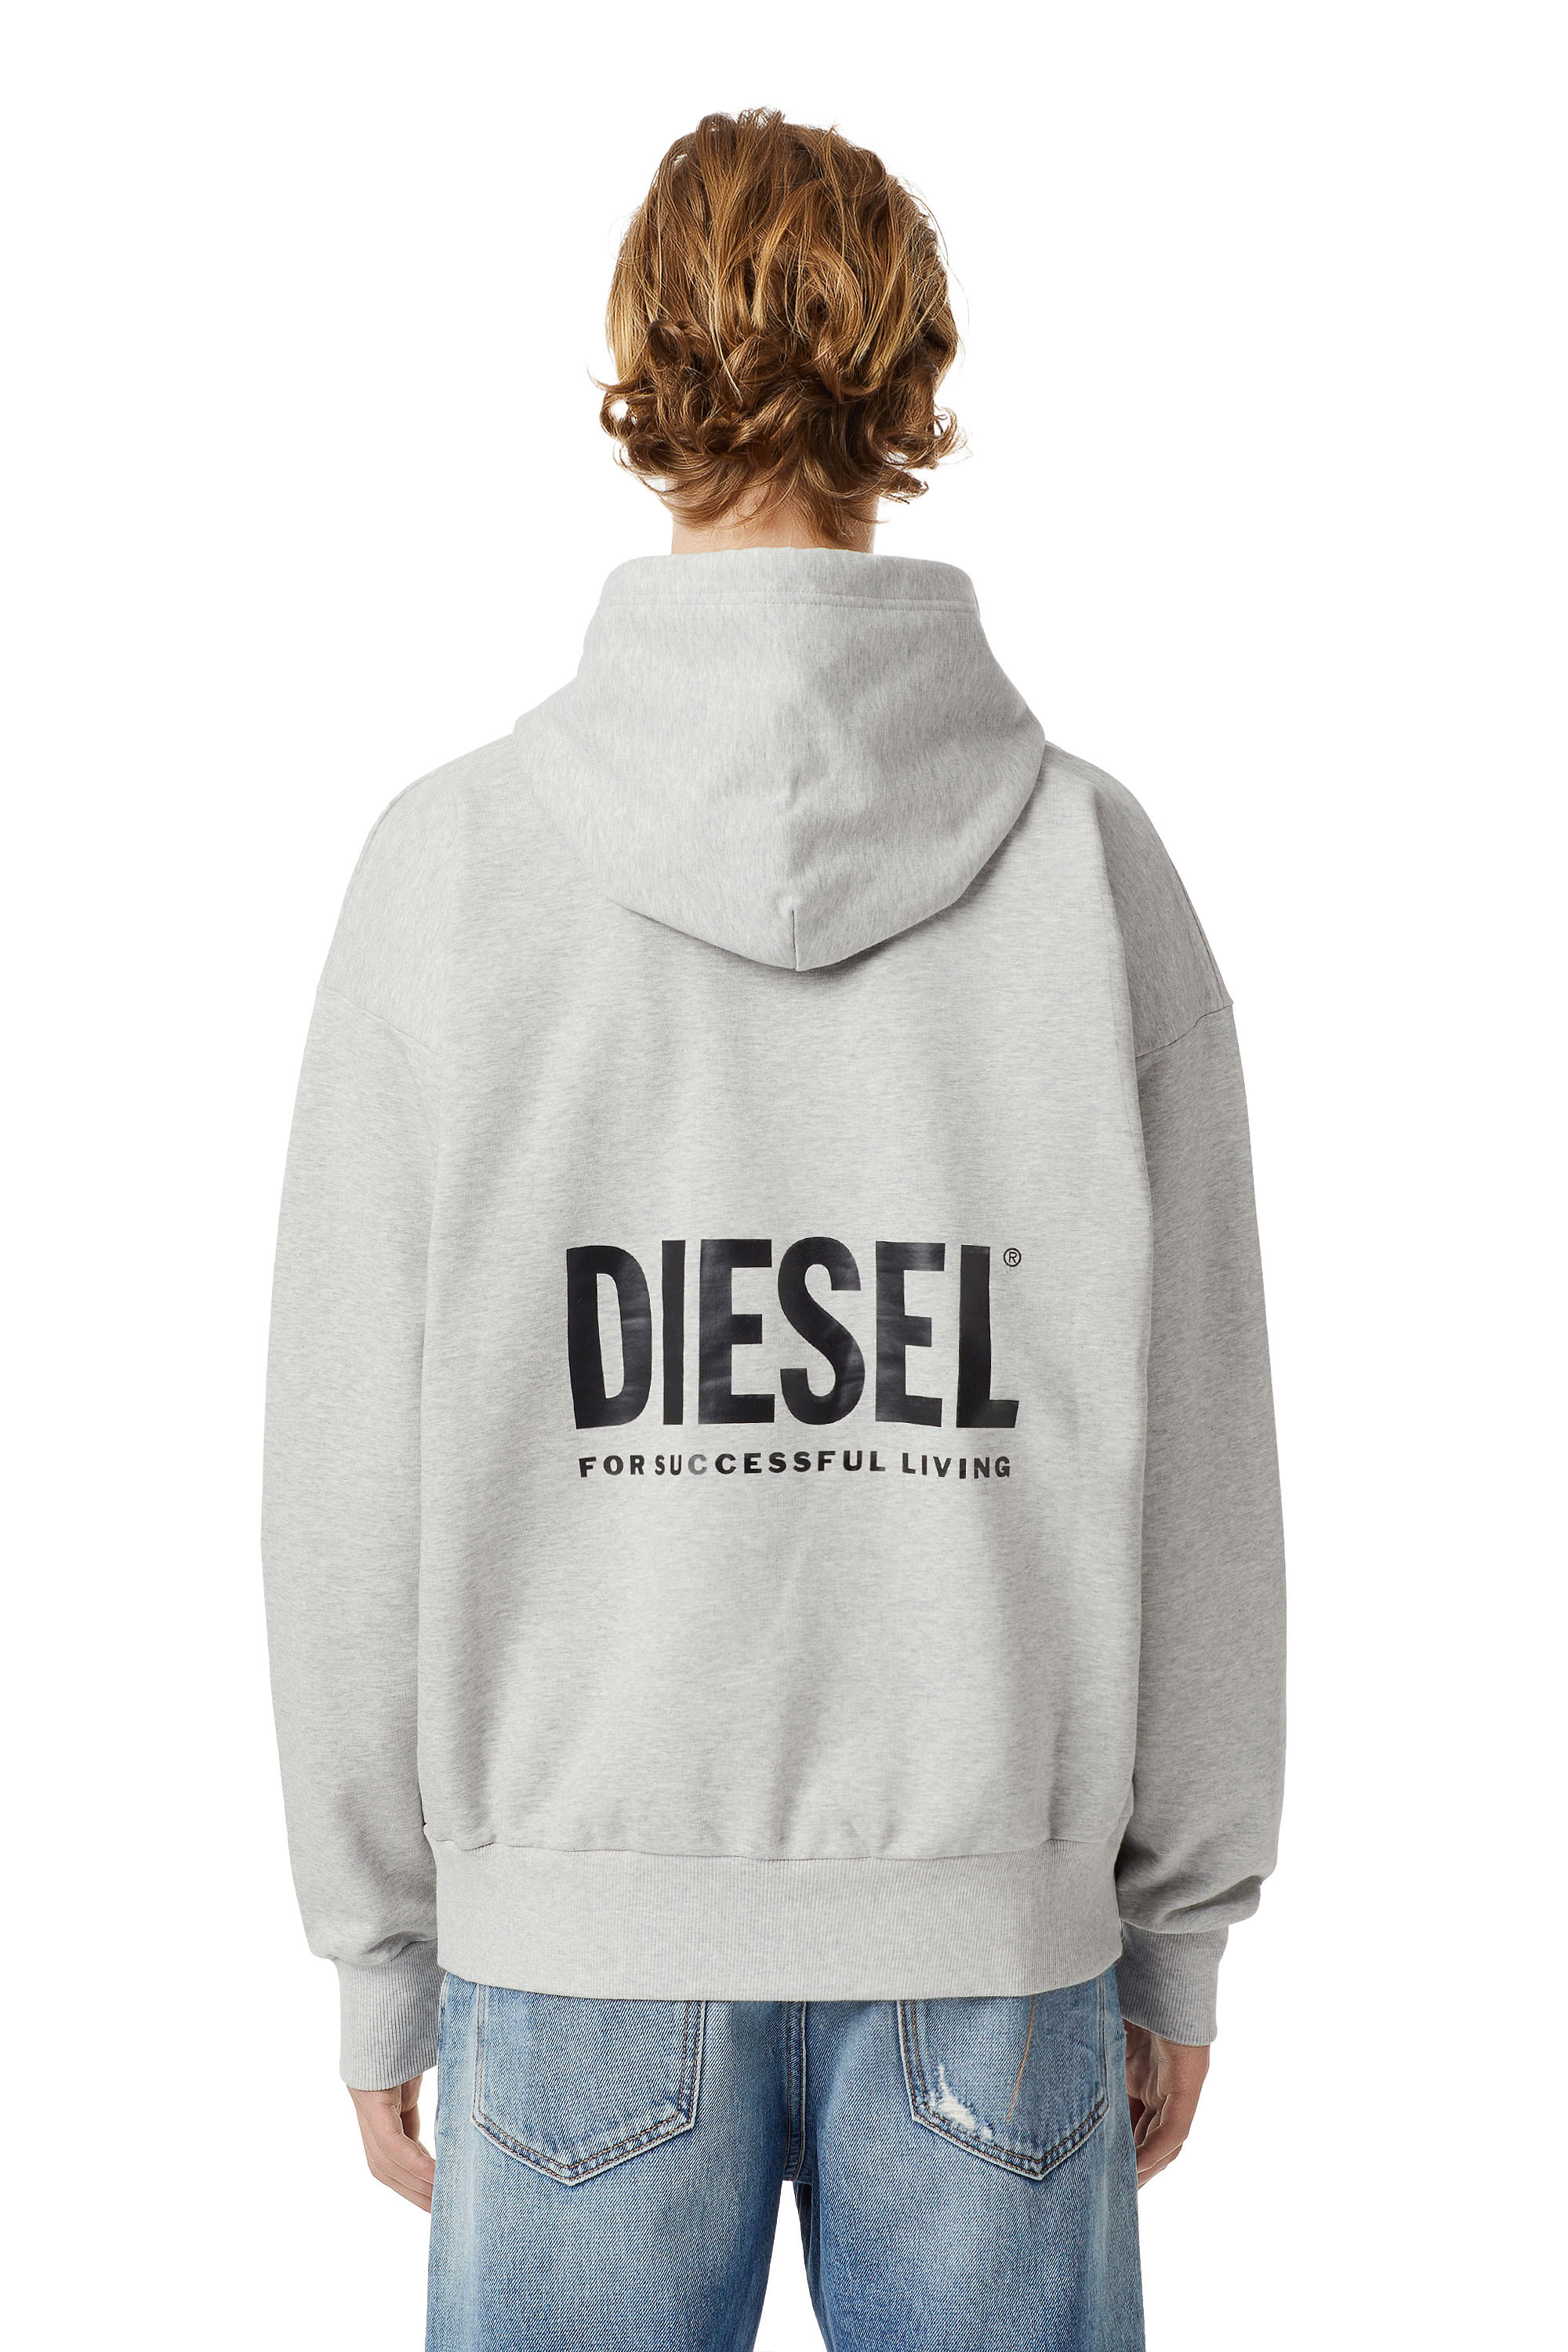 Diesel - LR-S-GIRK-HOOD-VIC, Light Grey - Image 2